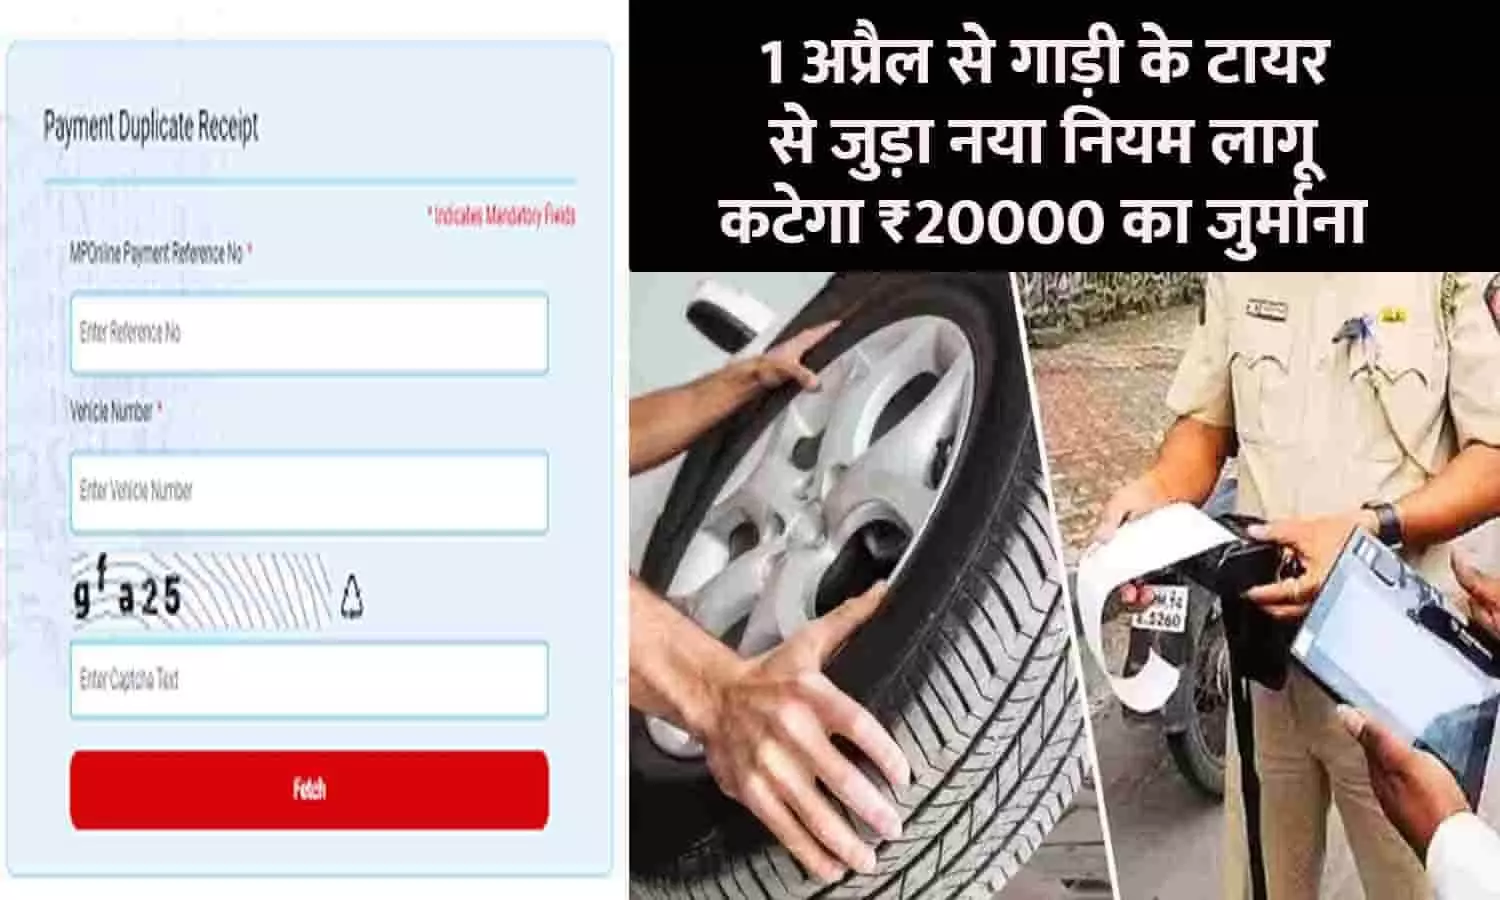 RTO New Rules Big Alert 1 April 2023: 1 अप्रैल से गाड़ी के टायर से जुड़ा नया नियम लागू, कटेगा ₹20000 का जुर्माना, वाहन चालक तुरंत ध्यान दे